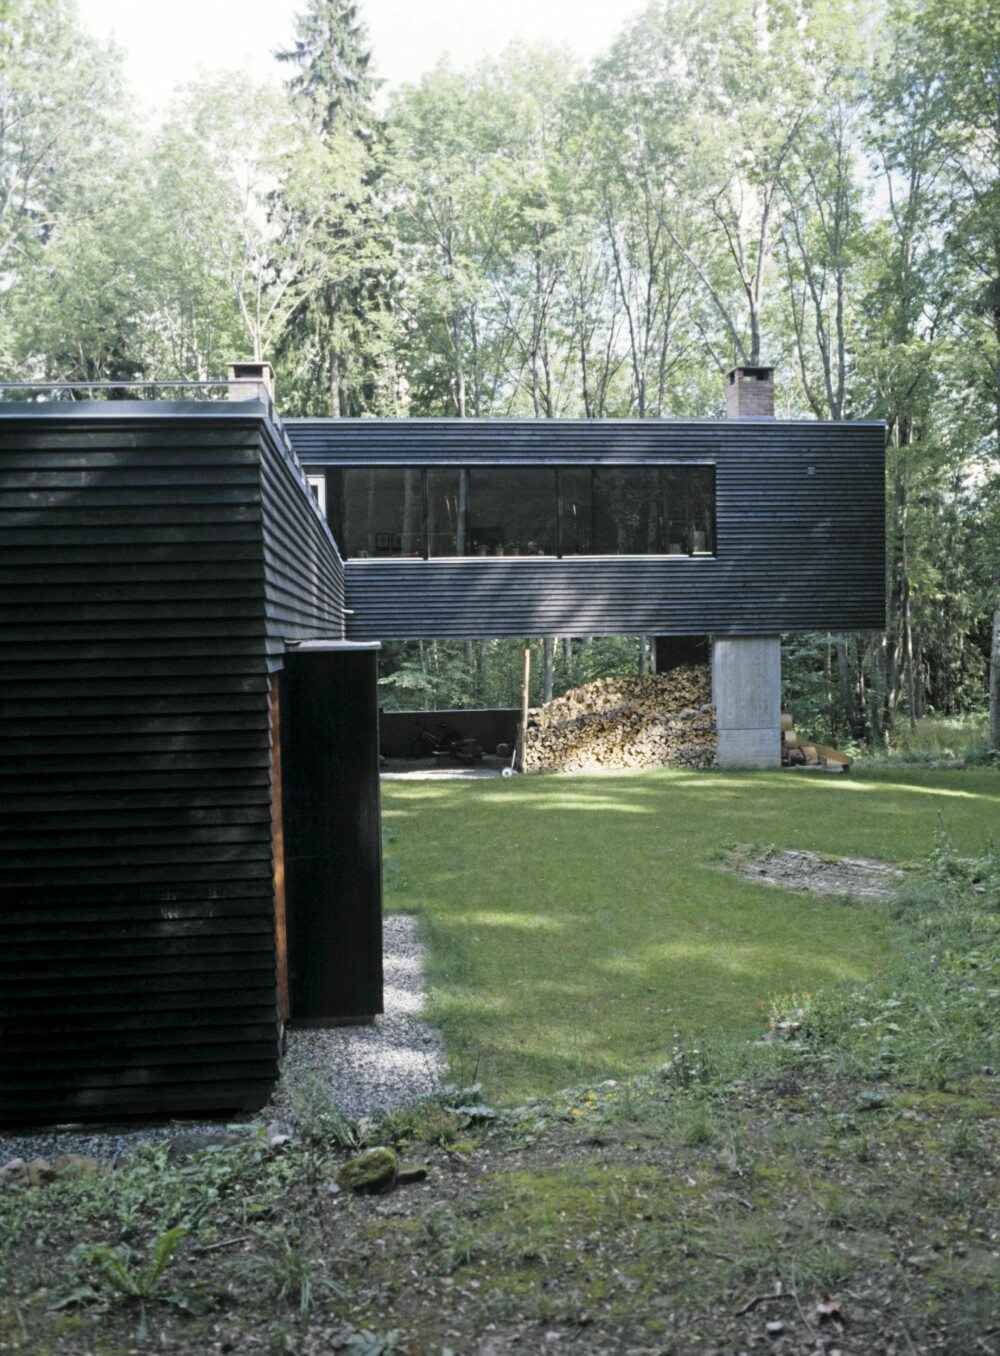 AVANSERT I FORM OG MATERIALER: Einar Dahle tegnet et hus som er et eksempel på avansert nåtidsarkitektur. Betongen er støpt med et jevnt mønster, ensartet farge og skarpe, presise hjørner.